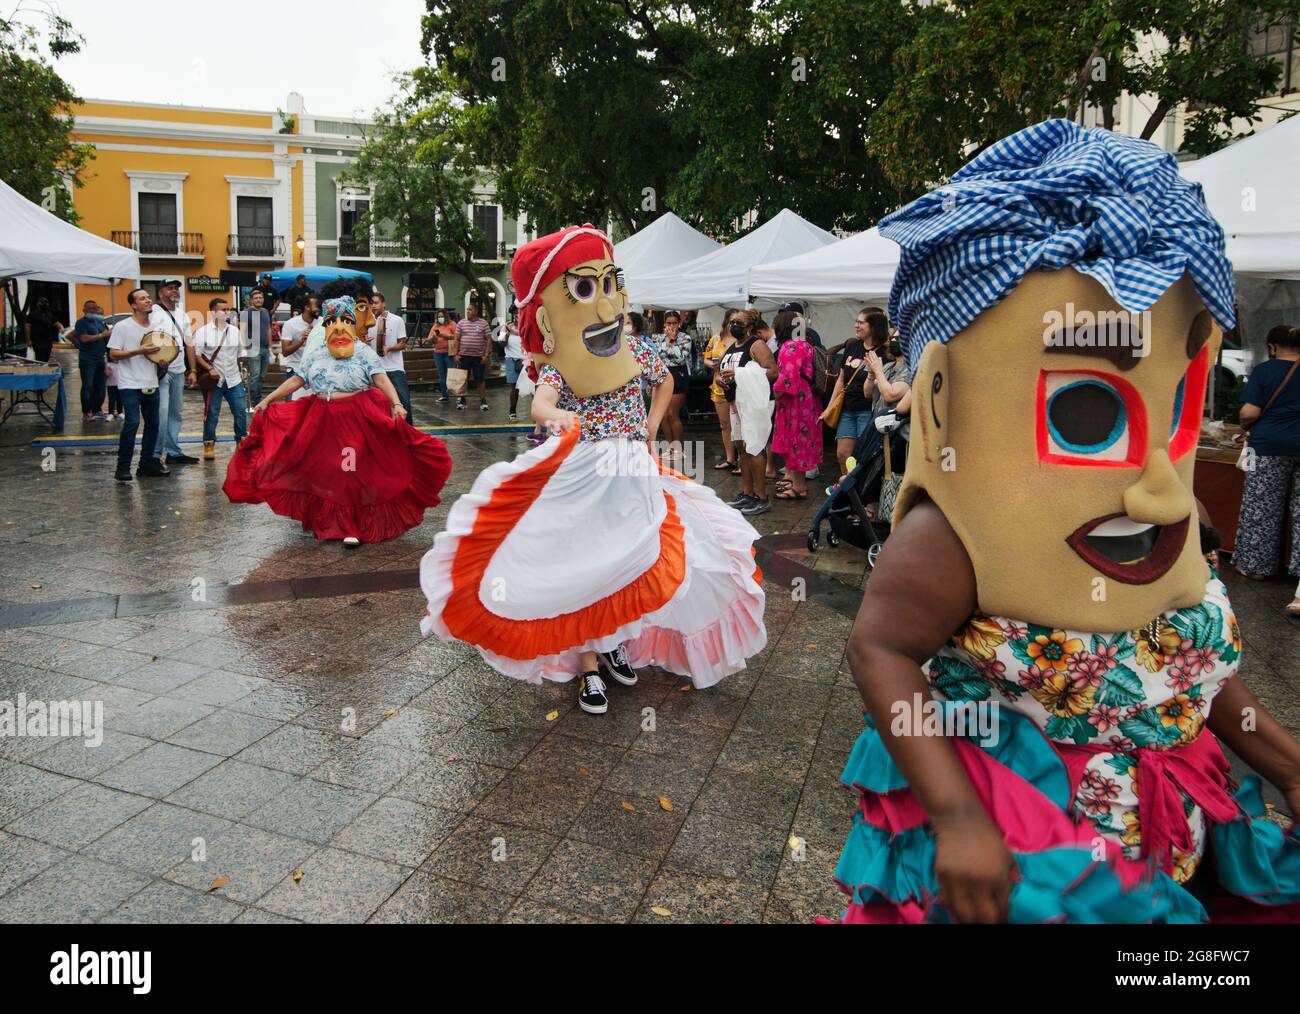 Cabezudos (Big Heads) tanzen auf der De Armas Plaza nach einem Sommerregen in Old San Juan, Puerto Rico, USA. Stockfoto